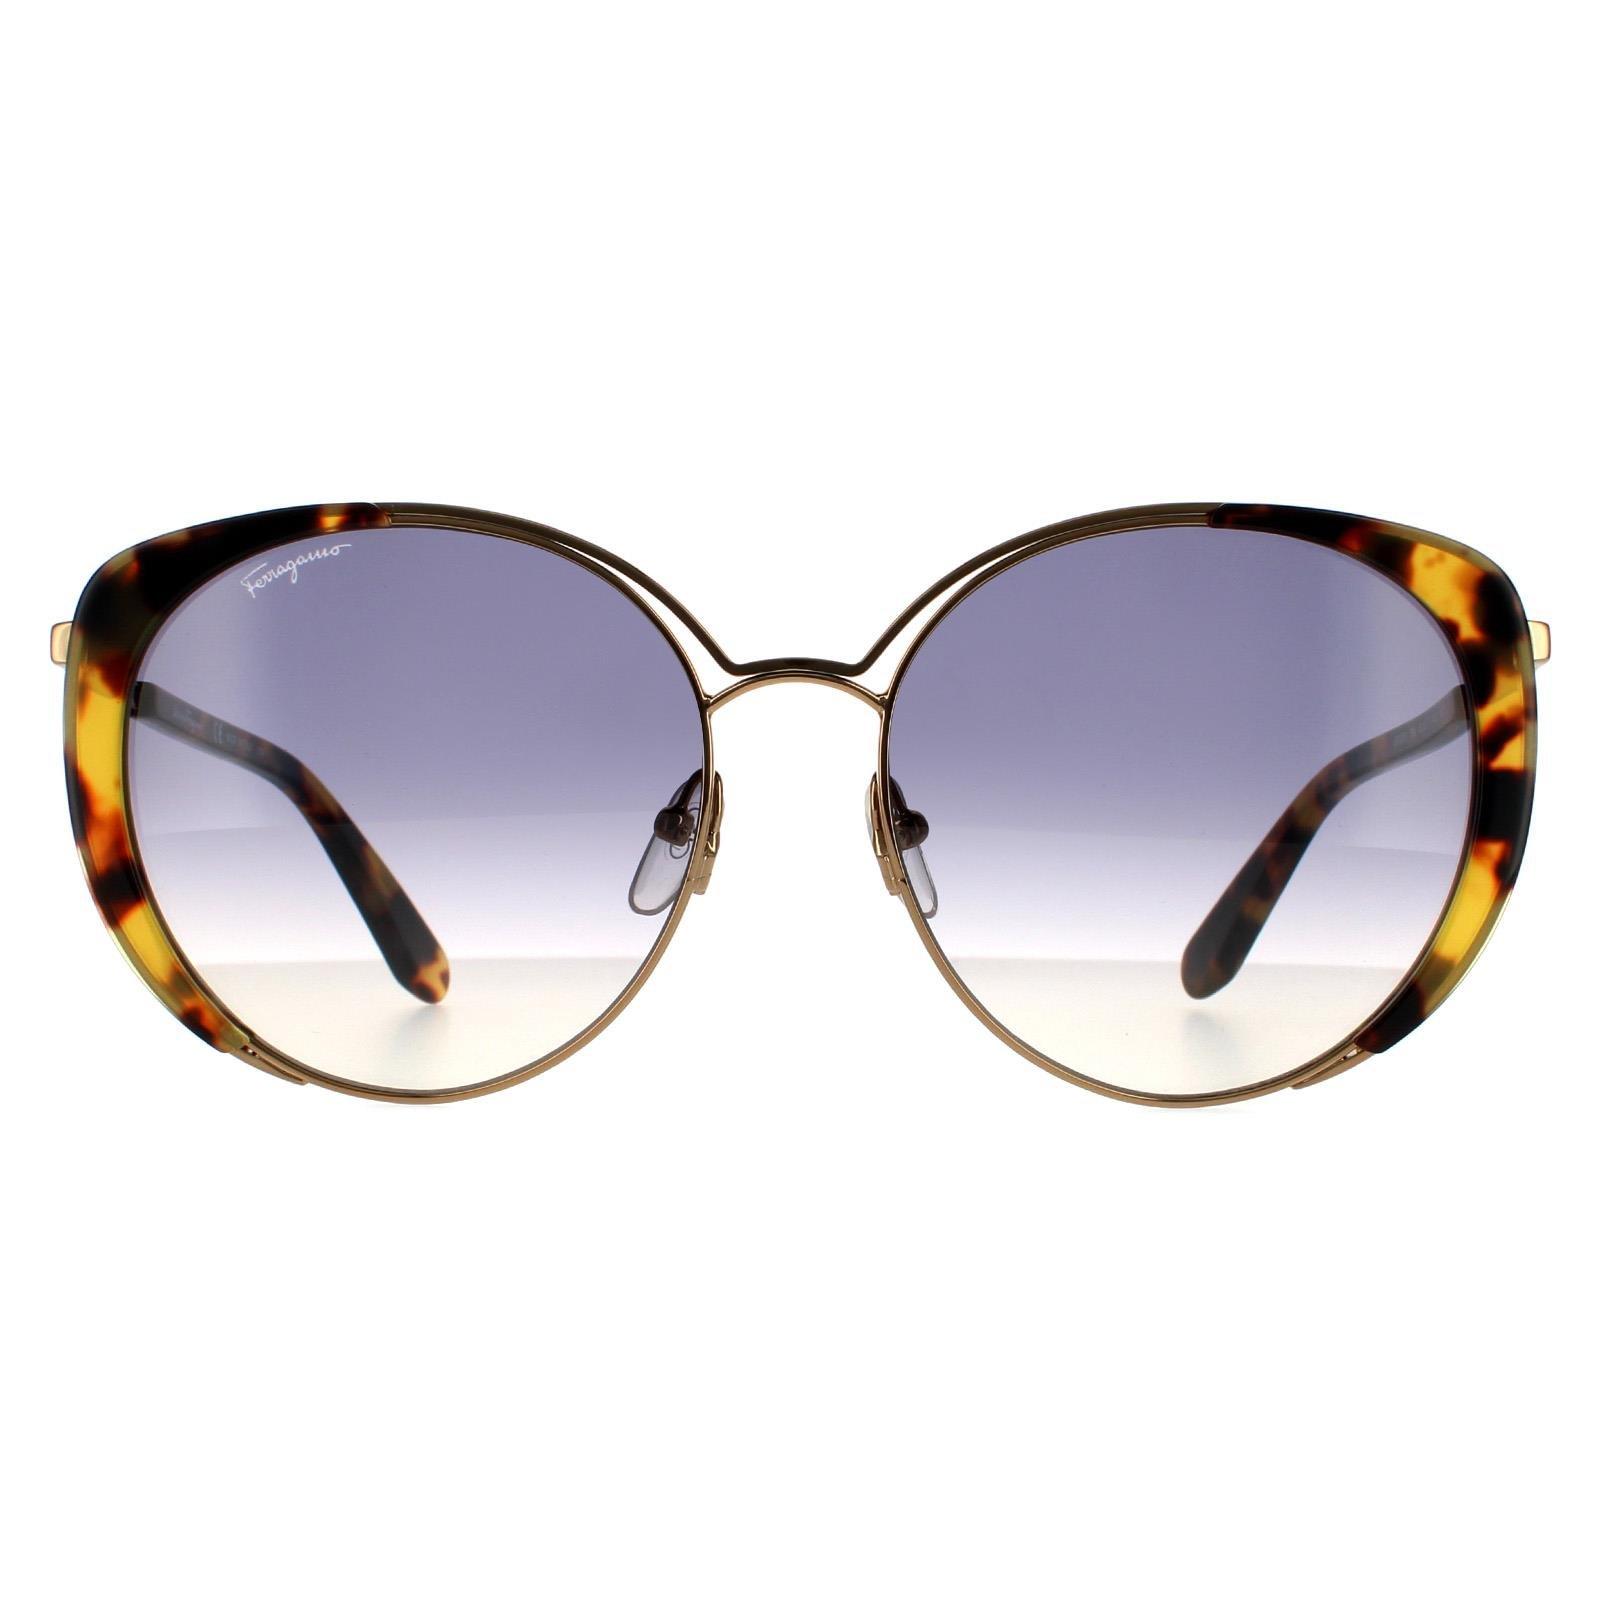 Солнцезащитные очки «кошачий глаз» янтарно-золото-черепахового цвета с градиентом Salvatore Ferragamo, золото